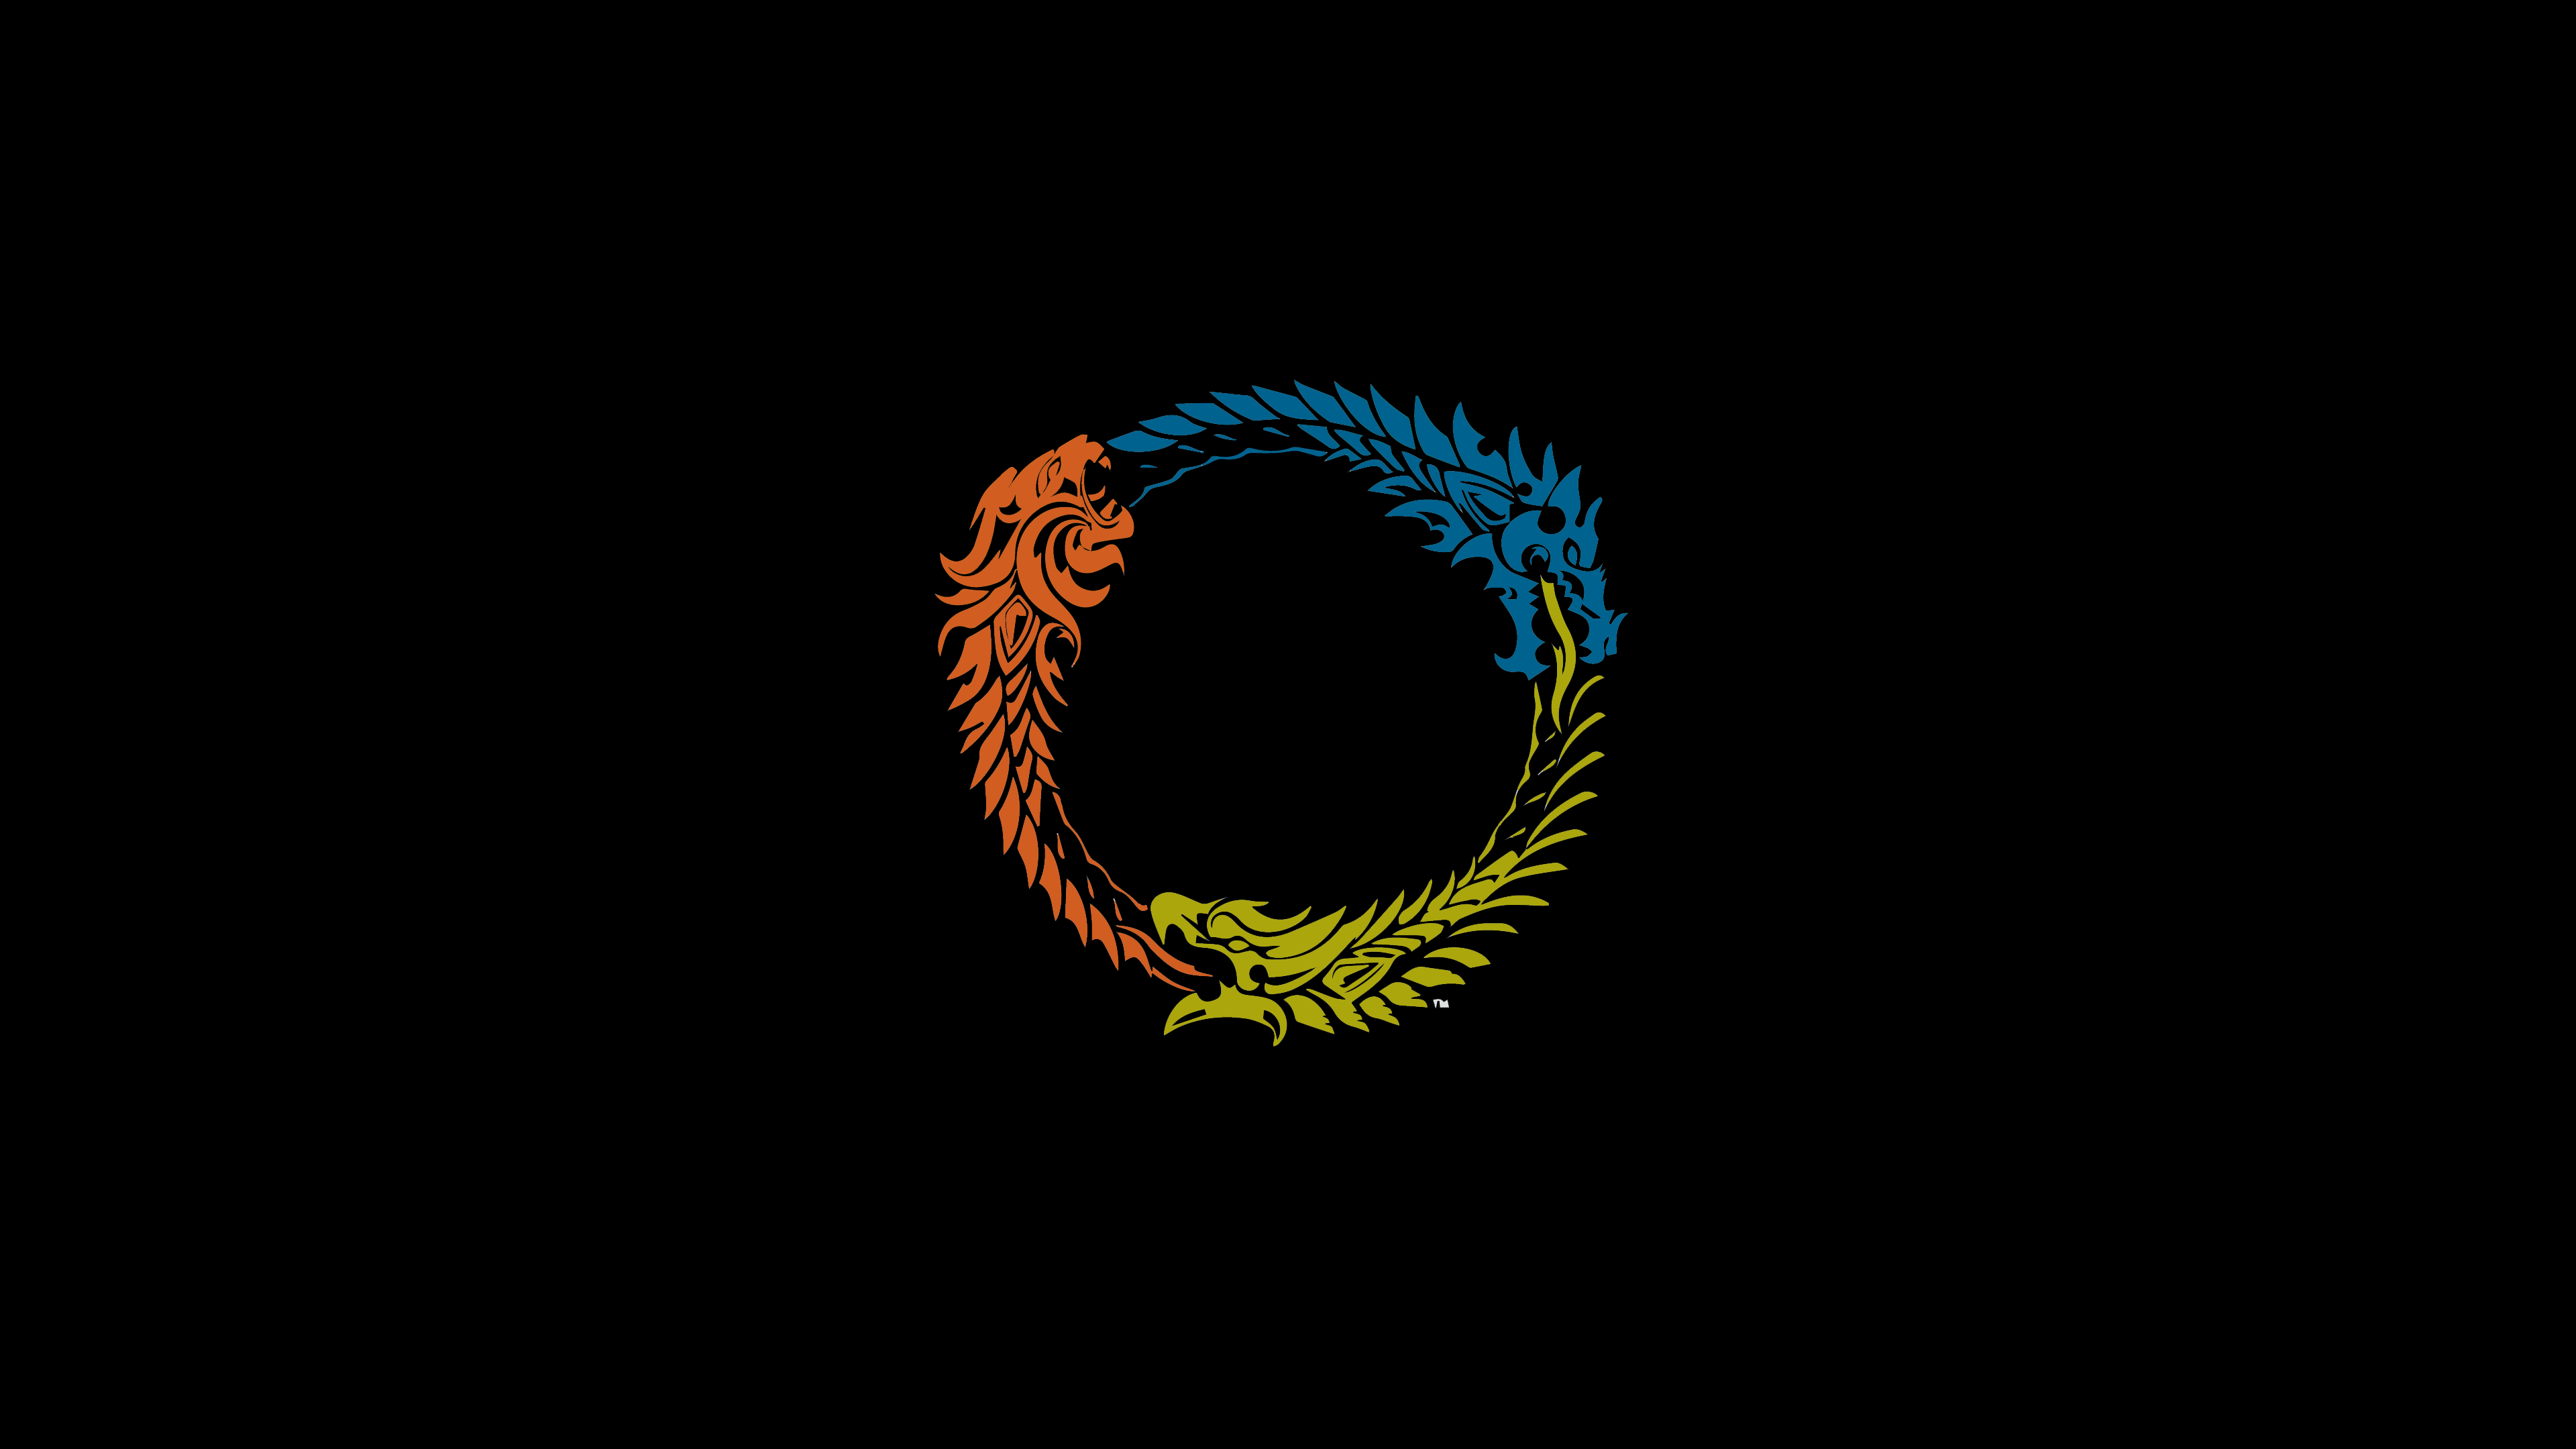 ESO logo Wallpaper (colored)